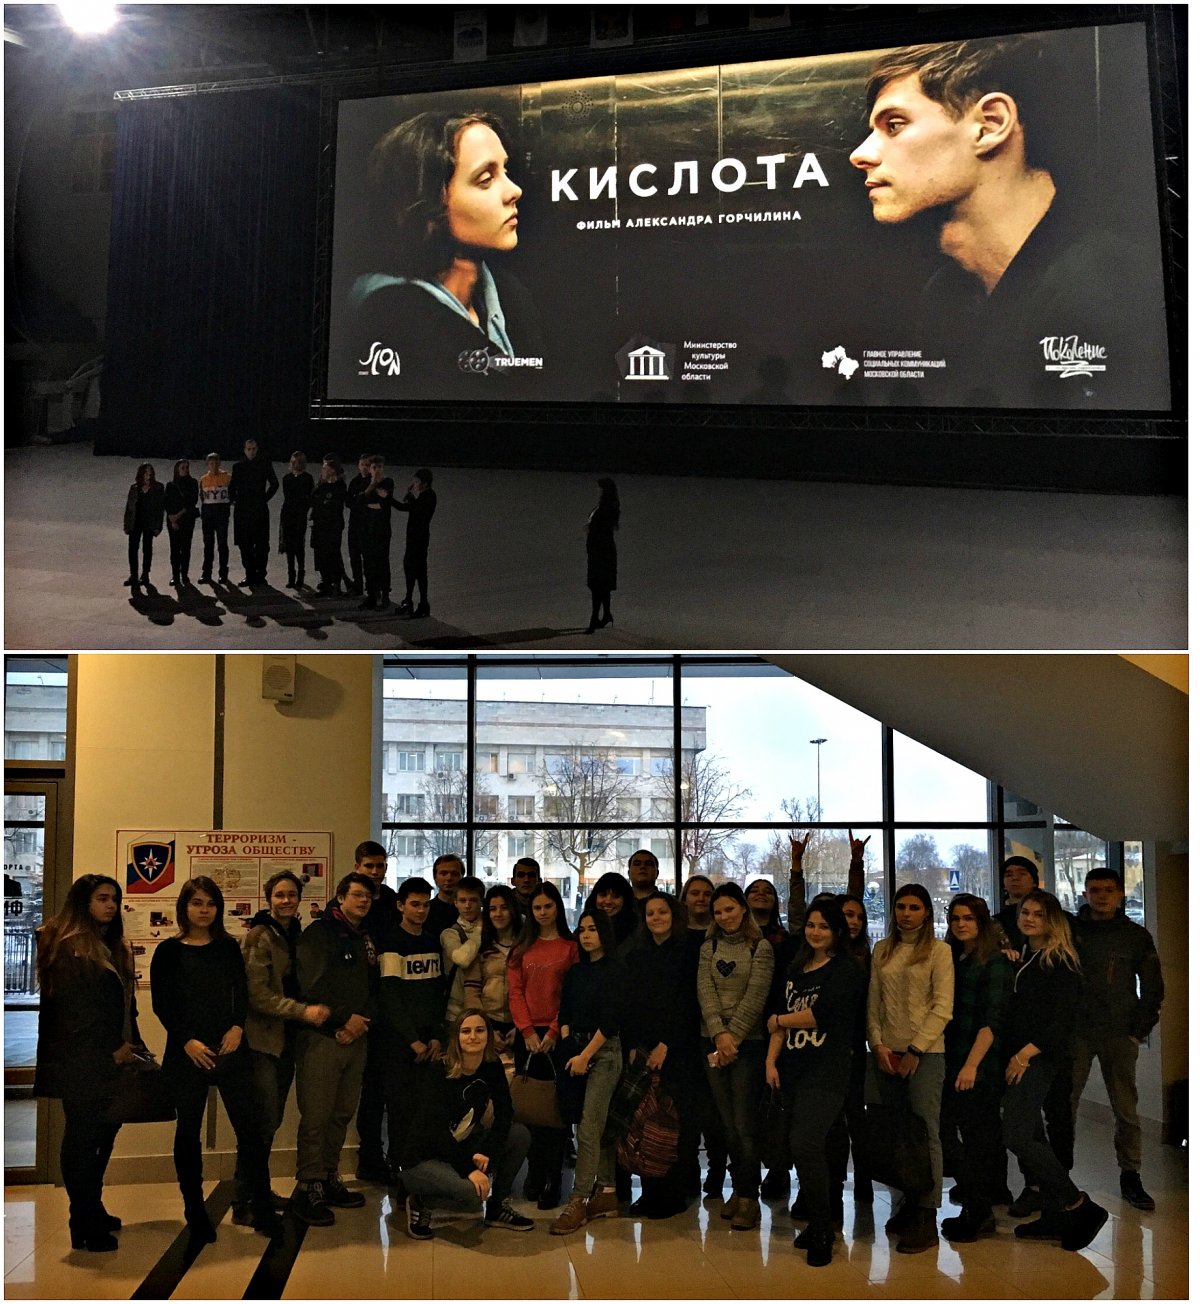 7 декабря 2018 года во Дворце спорта «Триумф» состоялась премьера фильма «Кислота» в рамках областного кинофестиваля «Точка зрения. Молодежный сеанс».